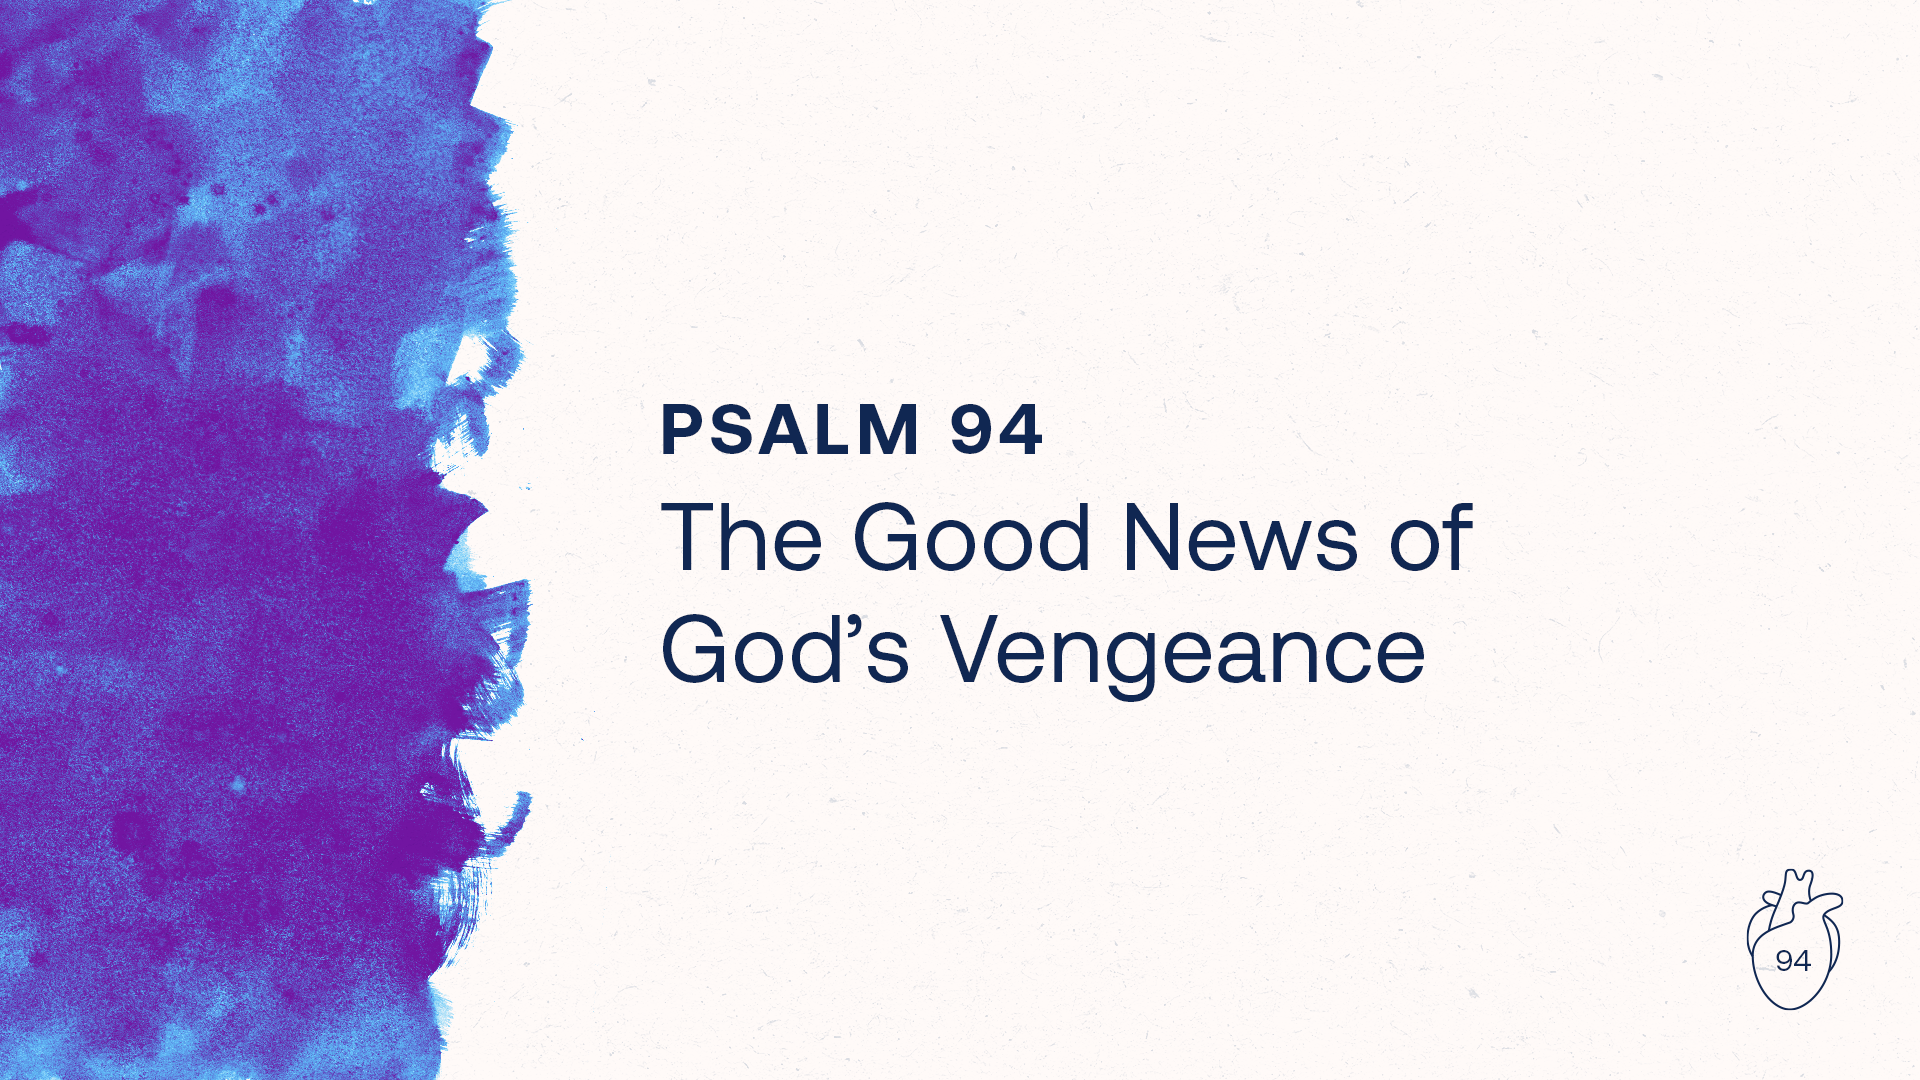 The Good News of God's Vengeance